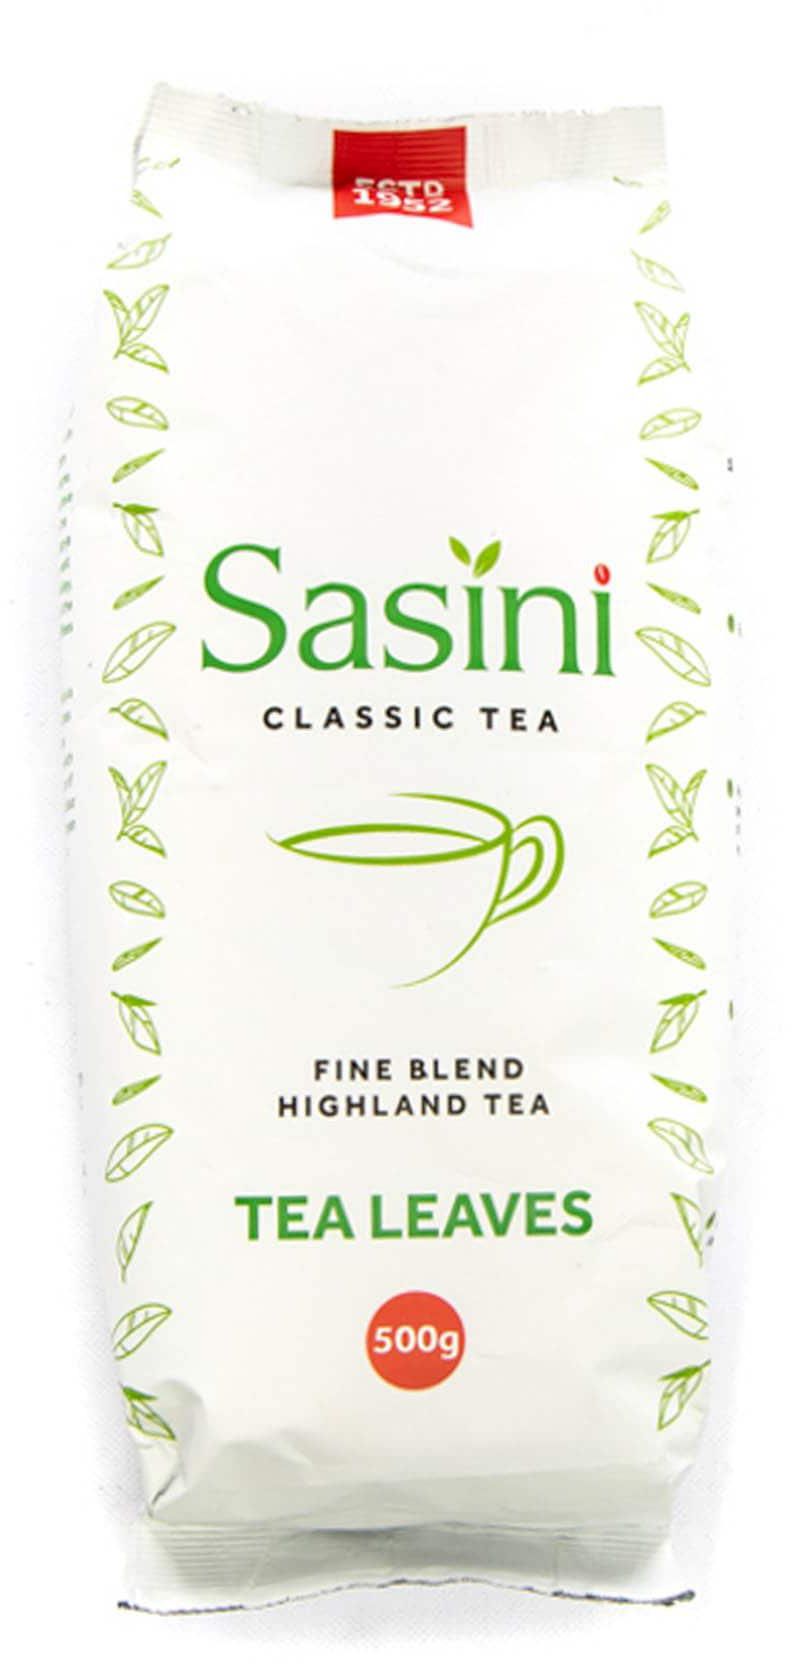 Sasini Classic Tea Leaves 500g